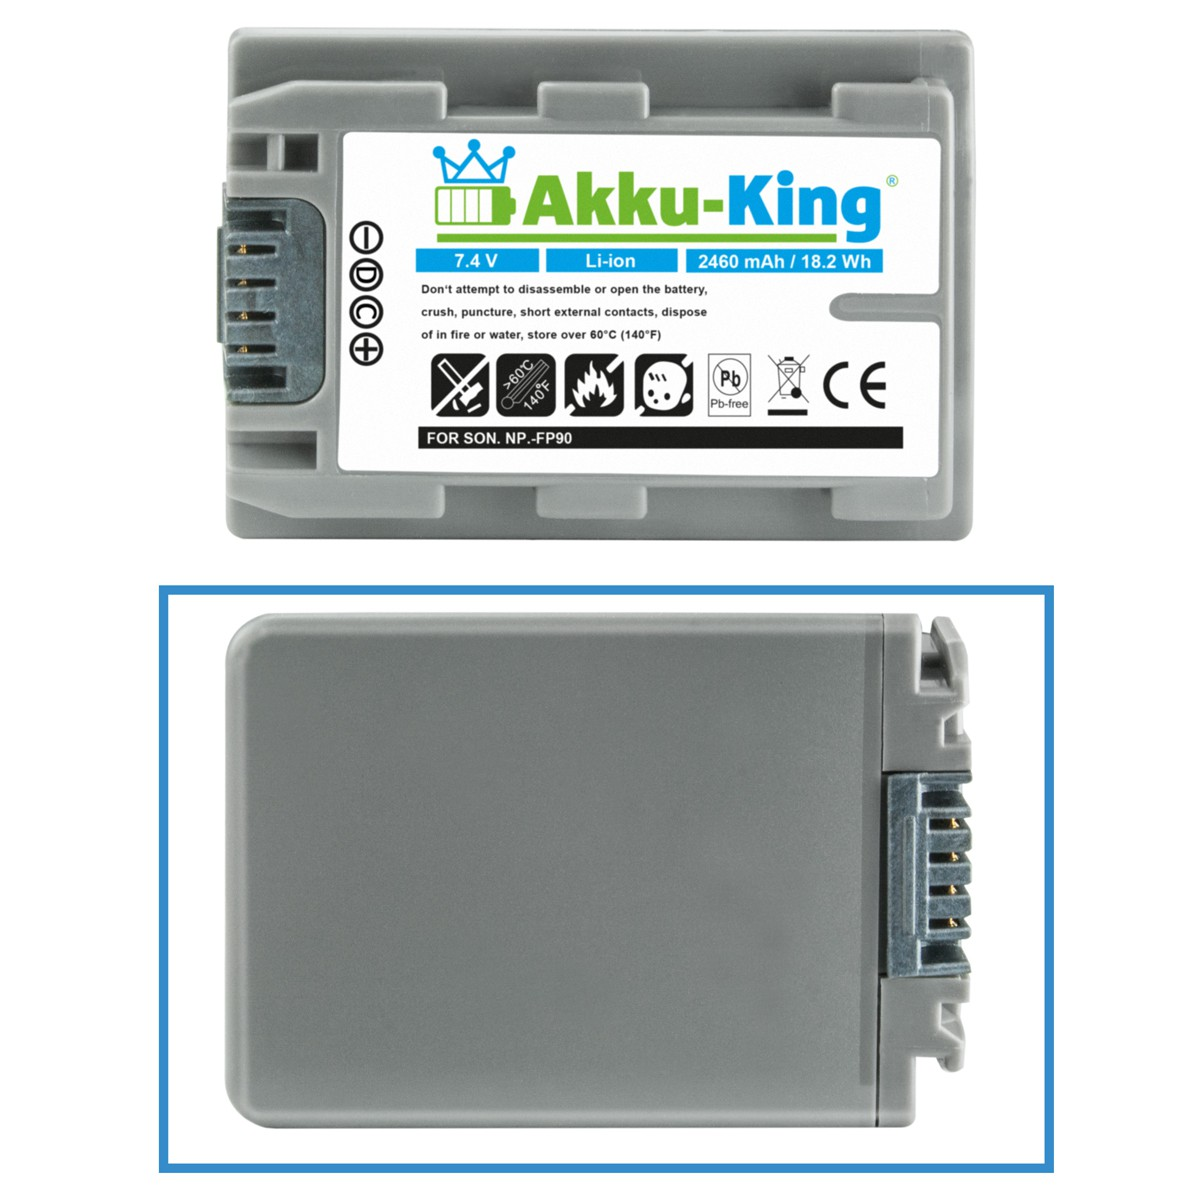 mit AKKU-KING Sony Volt, NP-FP90 Li-Ion Kamera-Akku, kompatibel 2460mAh Akku 7.4